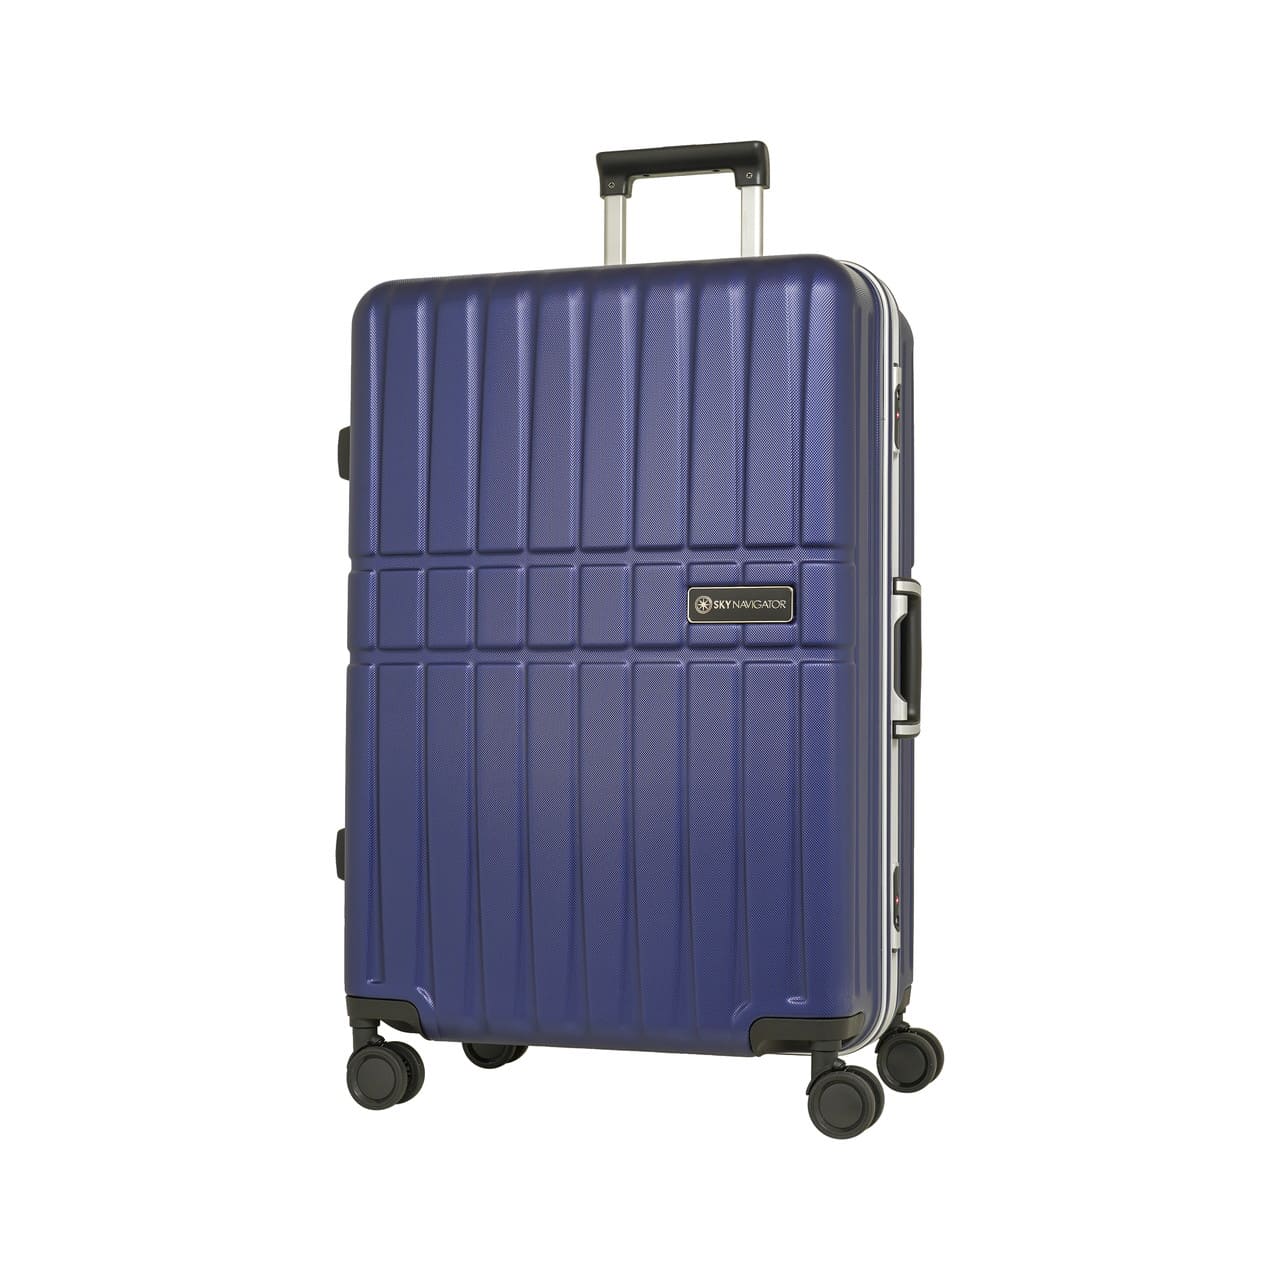 【Yahoo1位】 スーツケース l 7泊以上 1週間以上 キャリーケース 静音 ハード フレーム 旅行 おしゃれ かわいい ビジネス  スカイナビゲーター SK-0850-69